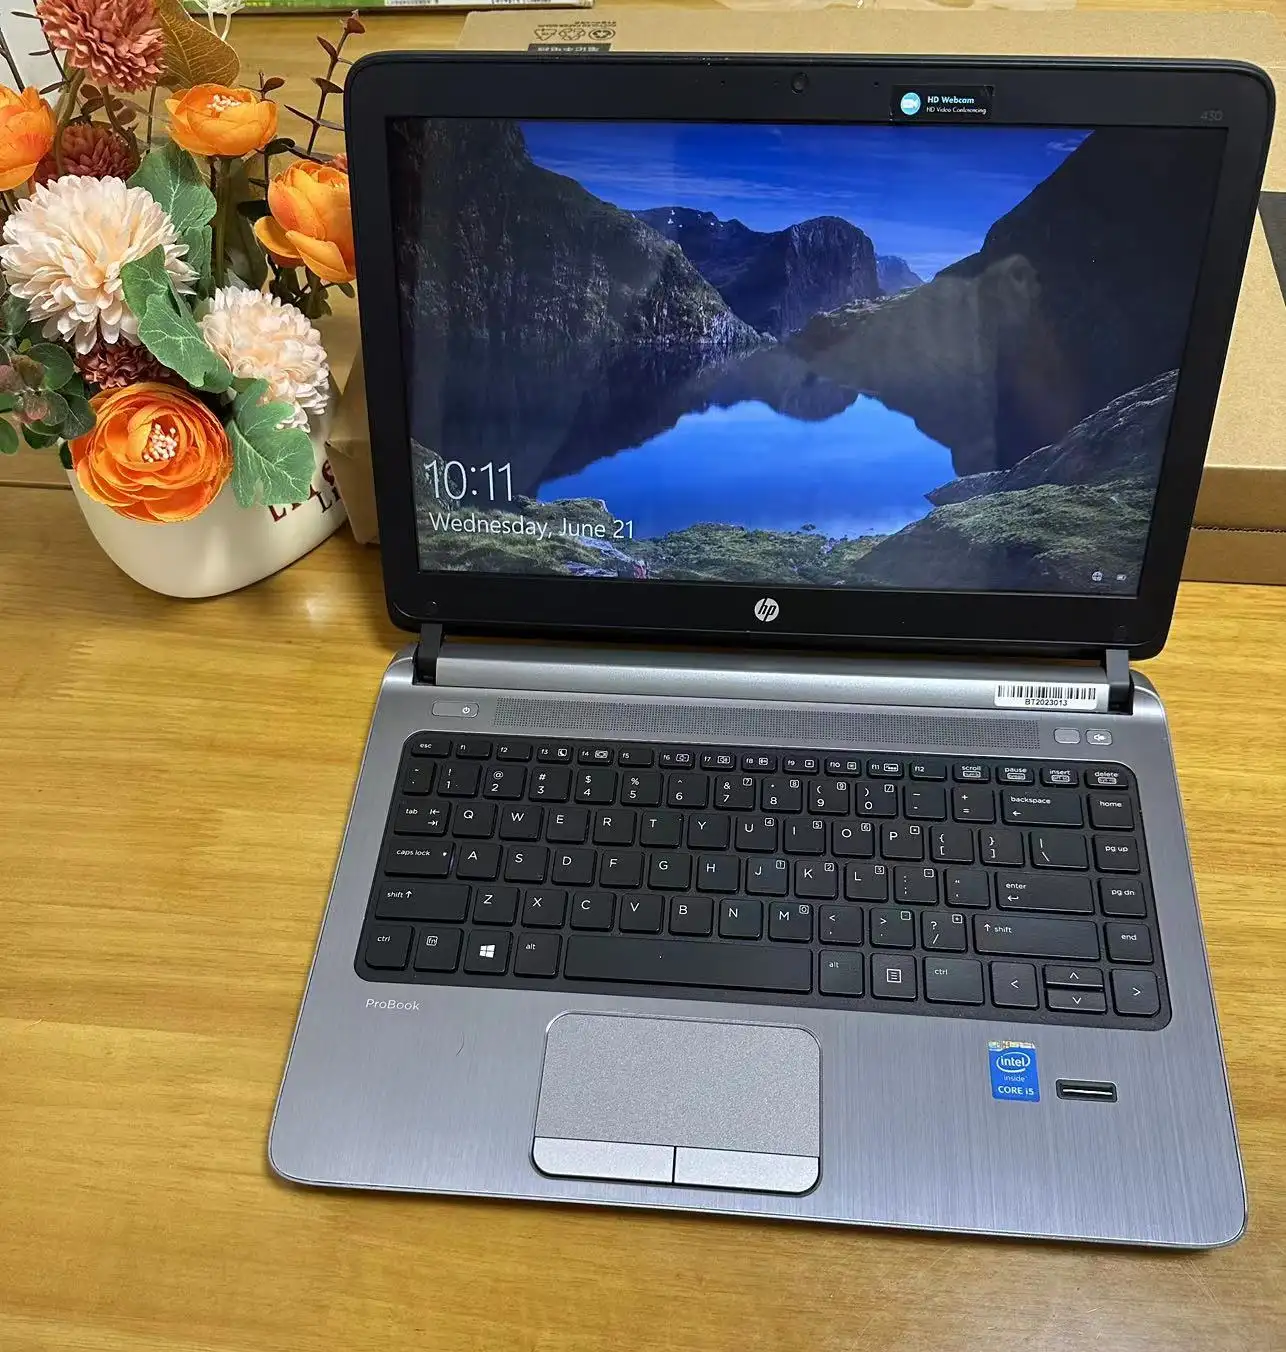 HP 430 G1 Usado Laptops Core i5 4ª Geração RAM 8GB HDD 500GB Win10 14 polegadas Segunda Mão Computador Portátil